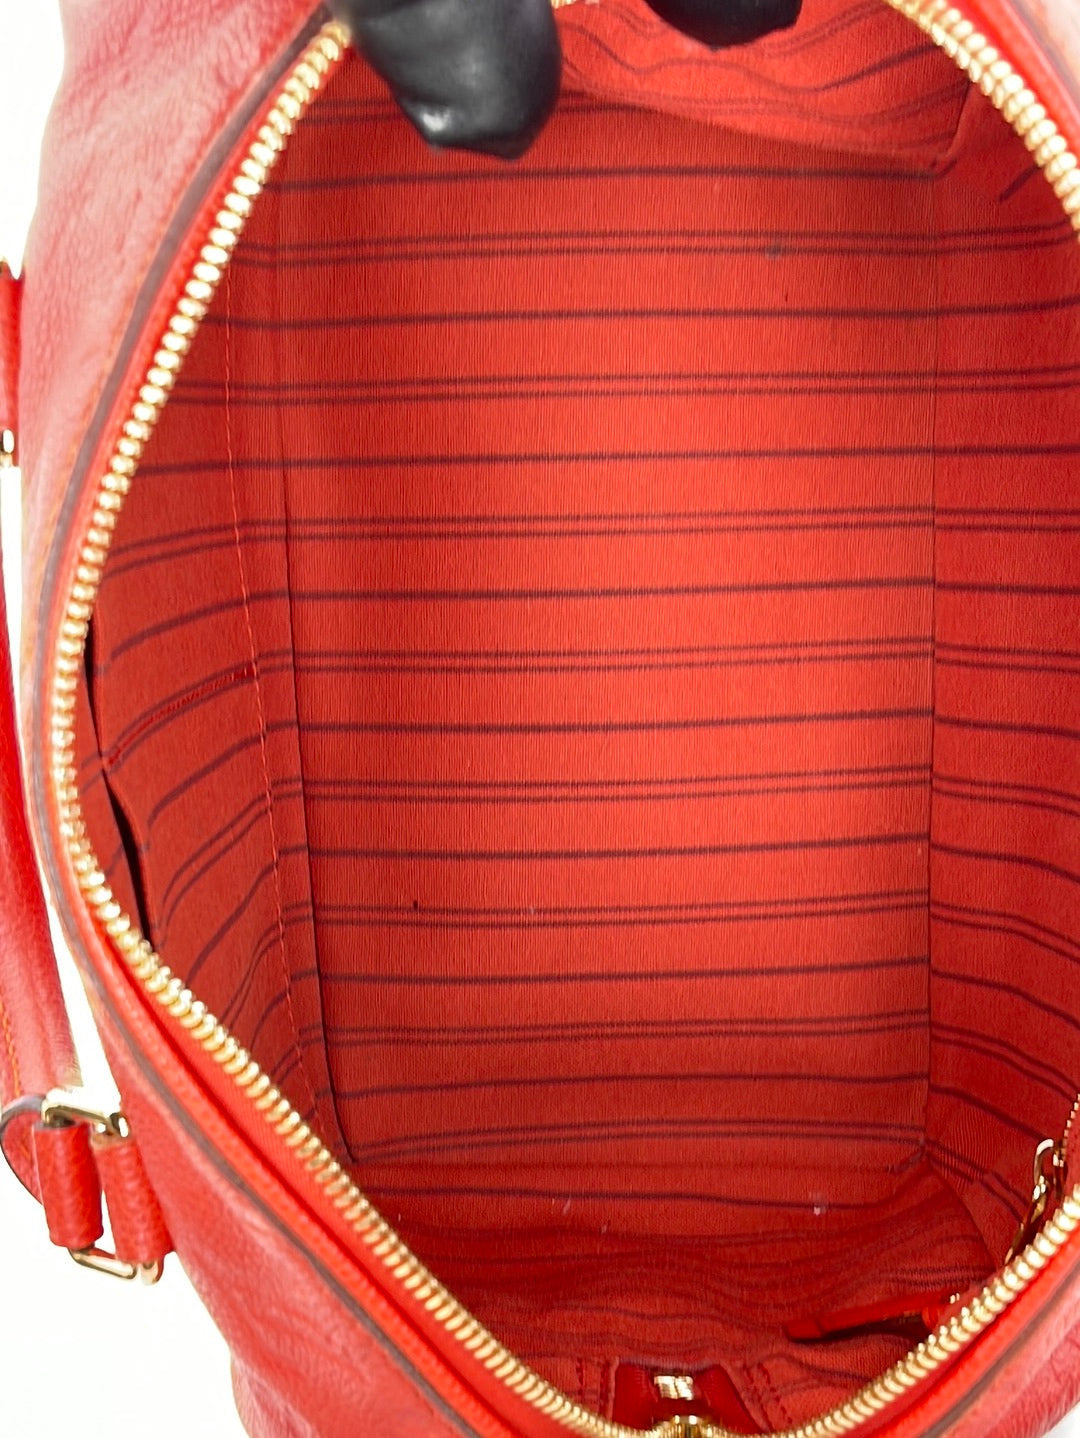 PRELOVED Louis Vuitton Speedy 25 Red Empriente Leather Bandolier Bag D3TTGBJ 031524 P